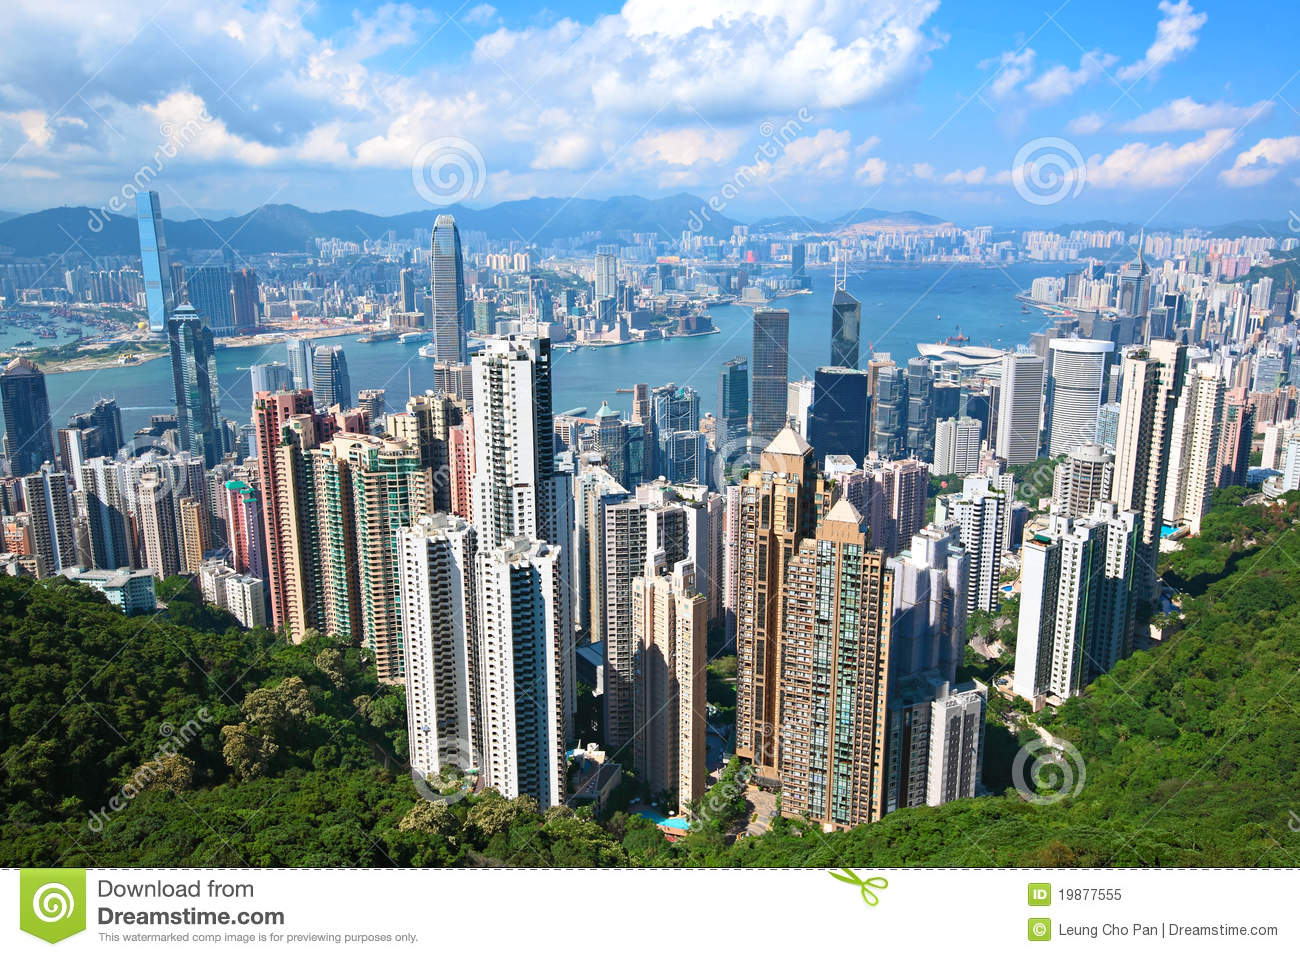 Hong Kong Landmark Royalty Free Stock Photo   Image  19877555